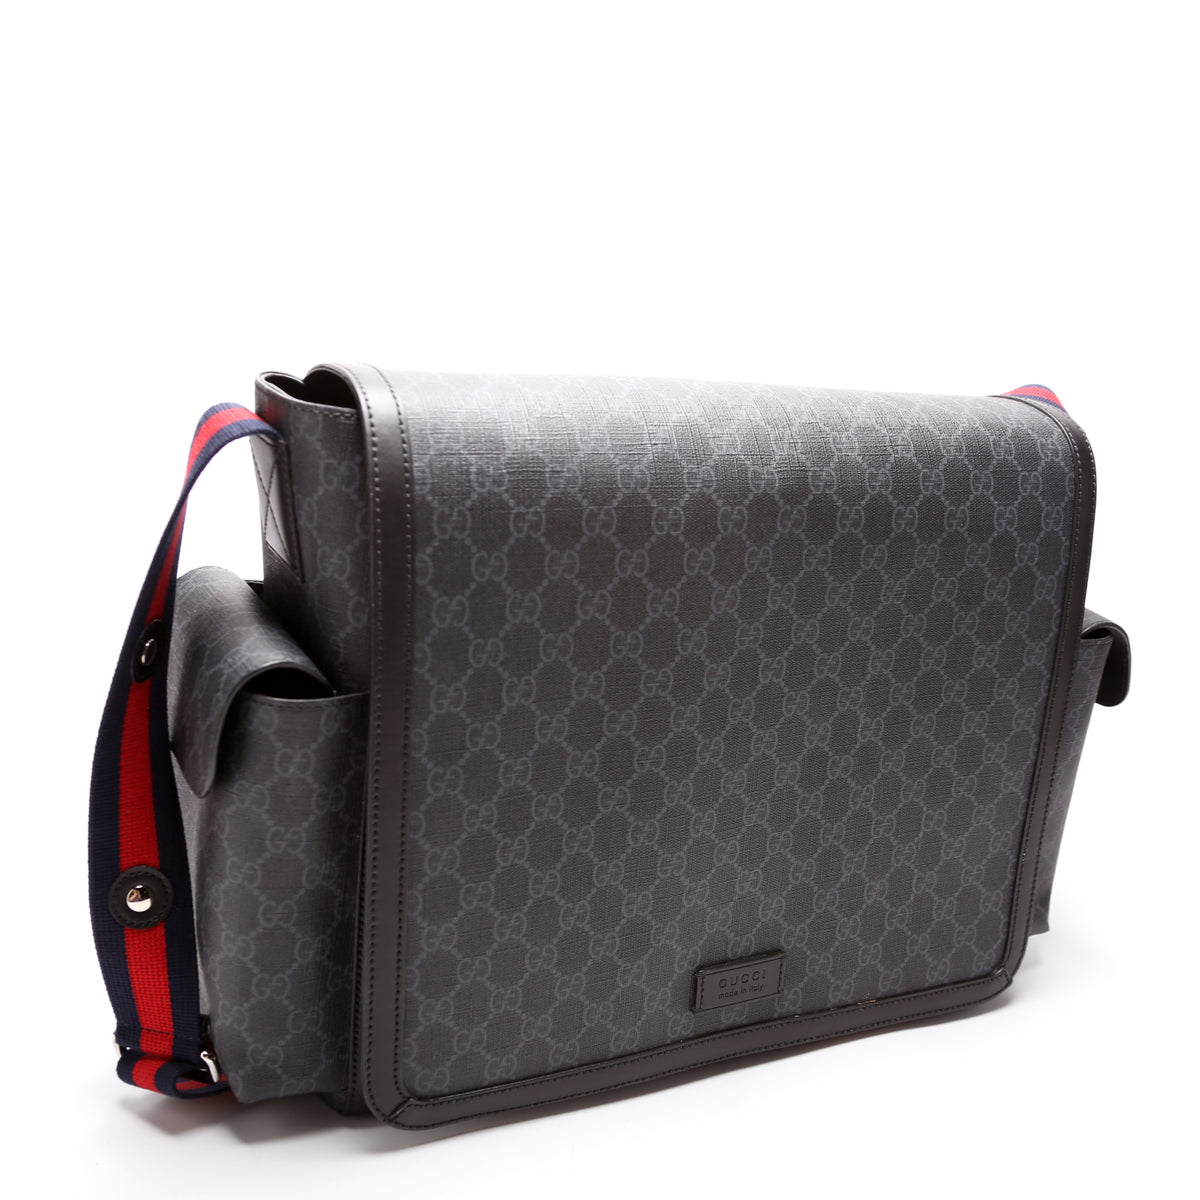 495909 GG Supreme Diaper Bag – Keeks Designer Handbags